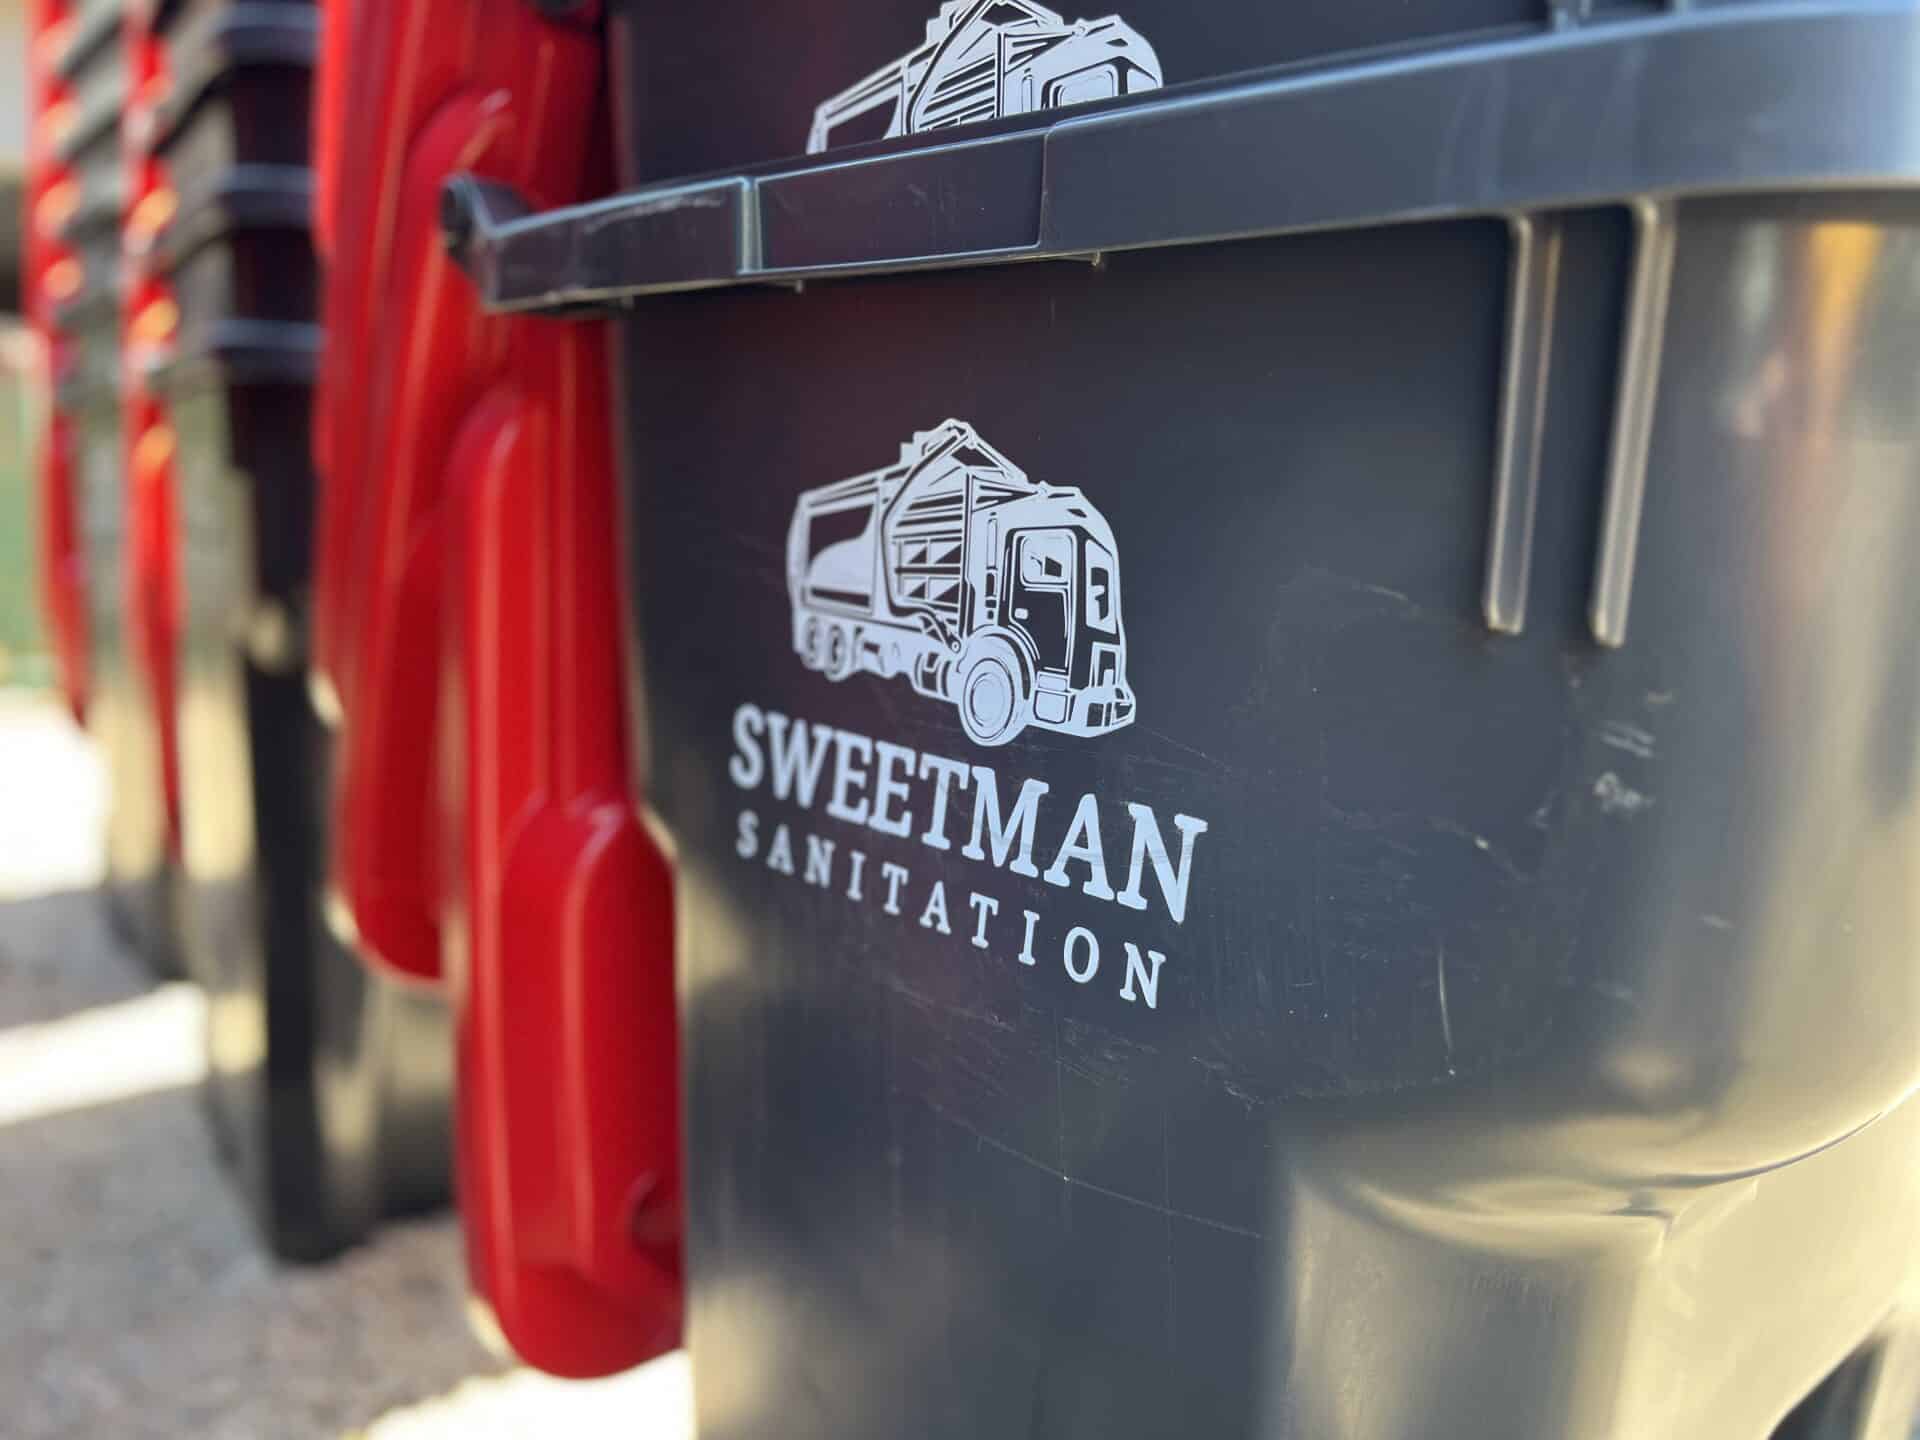 Sweetman Sanitation Logo on Trash Cart